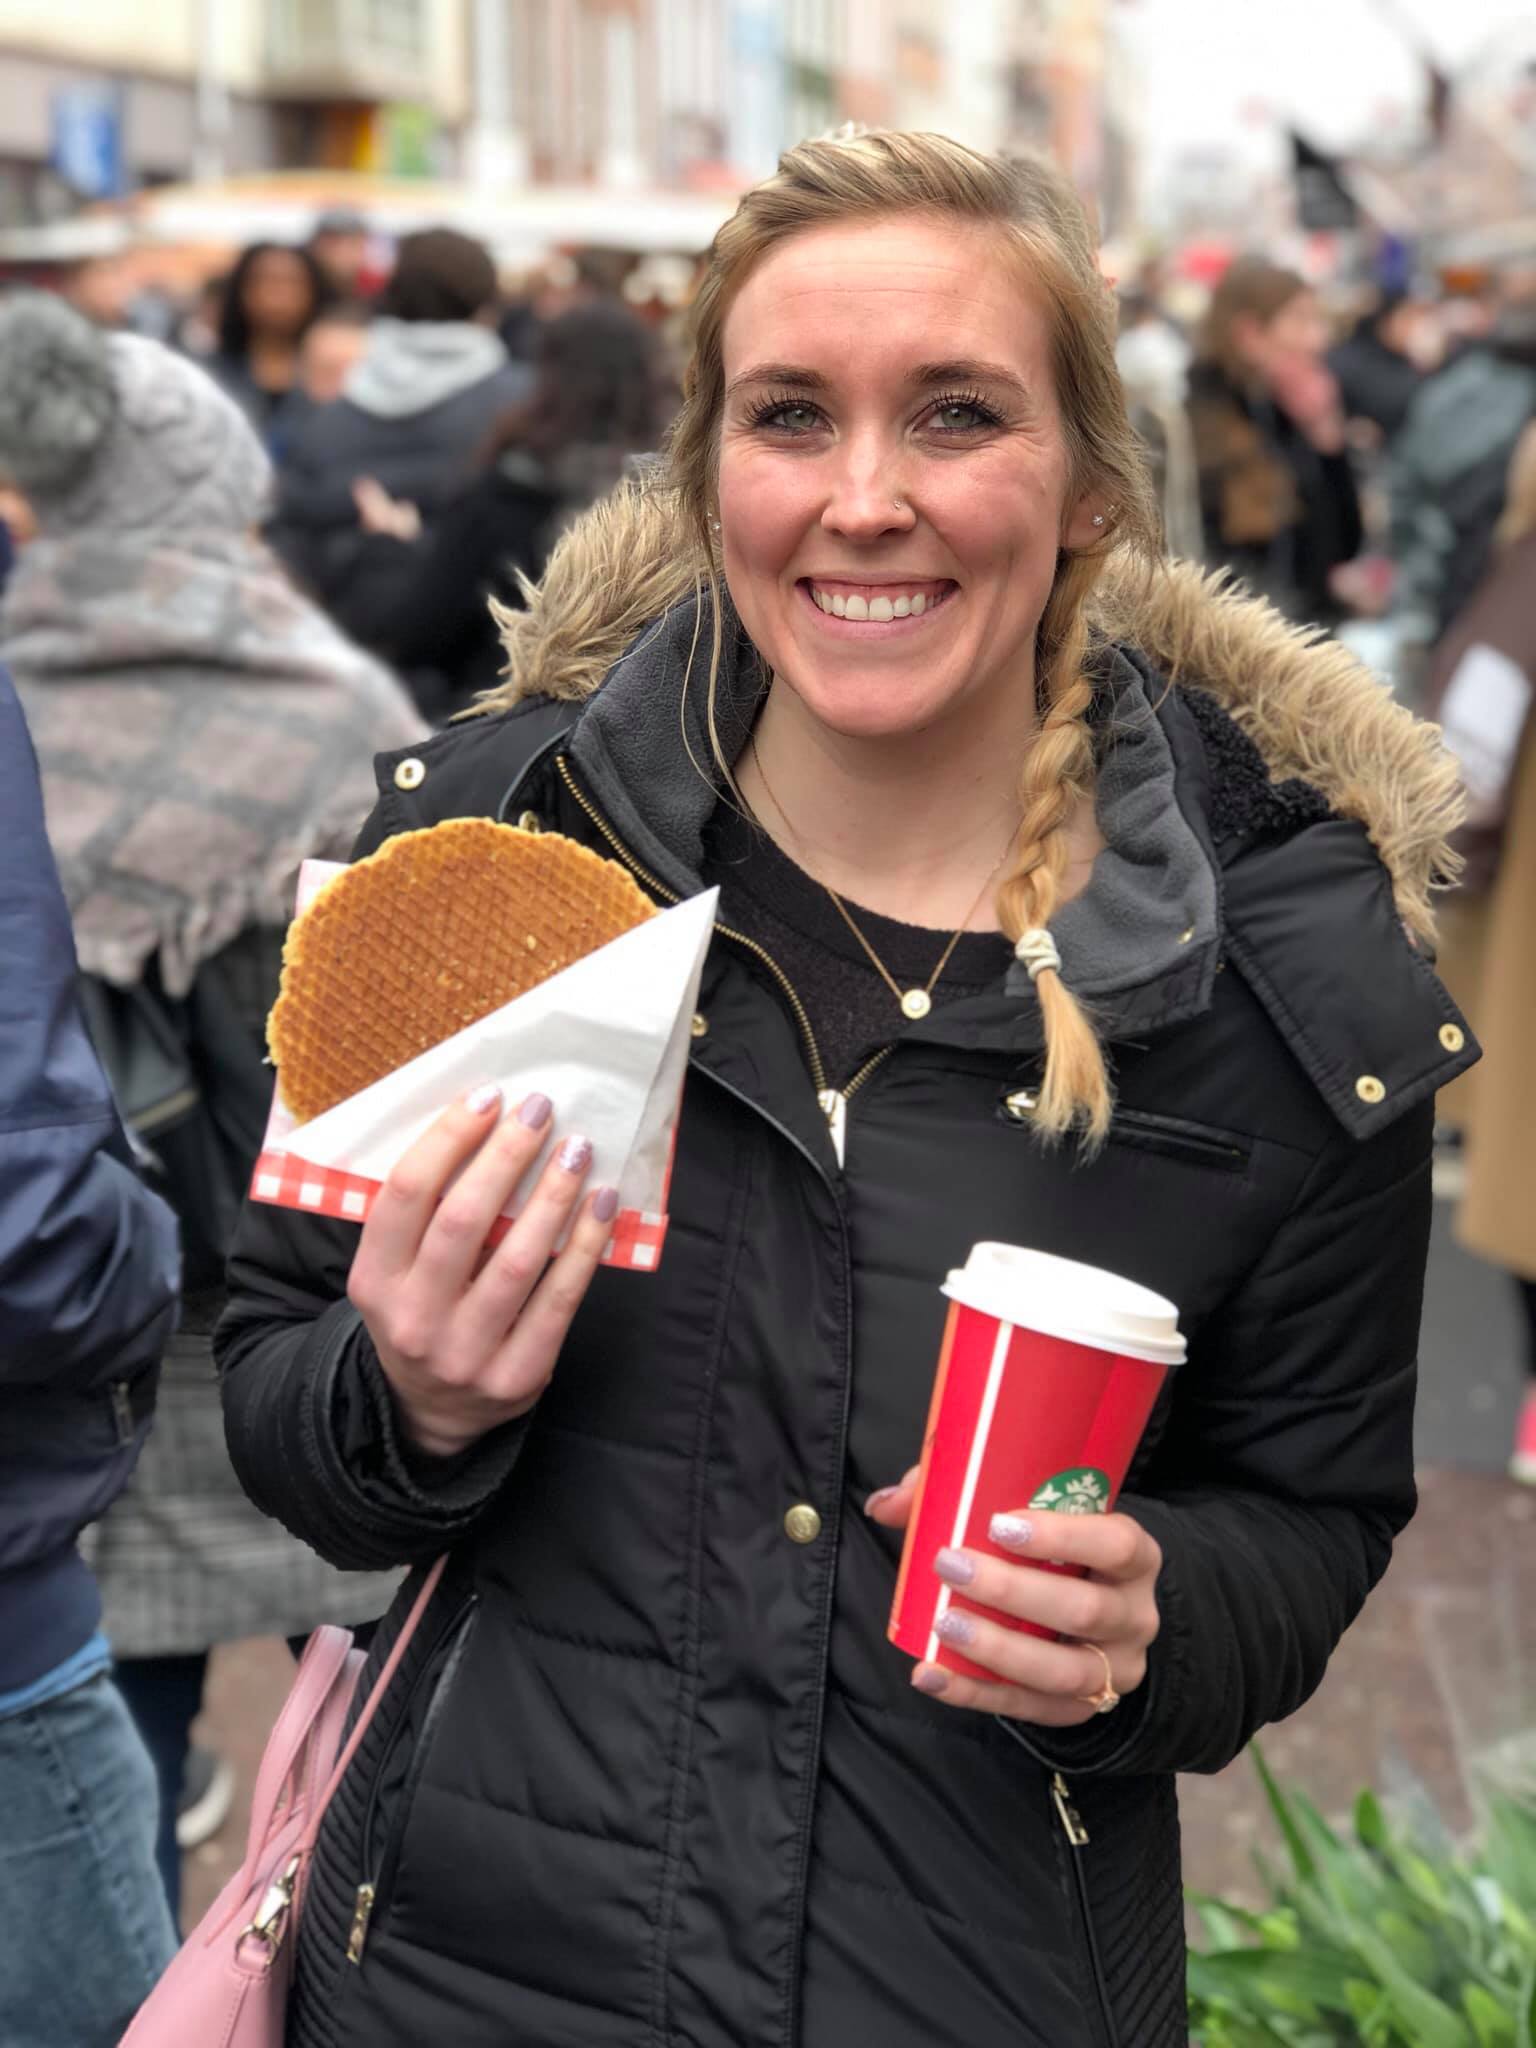 Erinn enjoying a Stroopwafel in Amsterdam